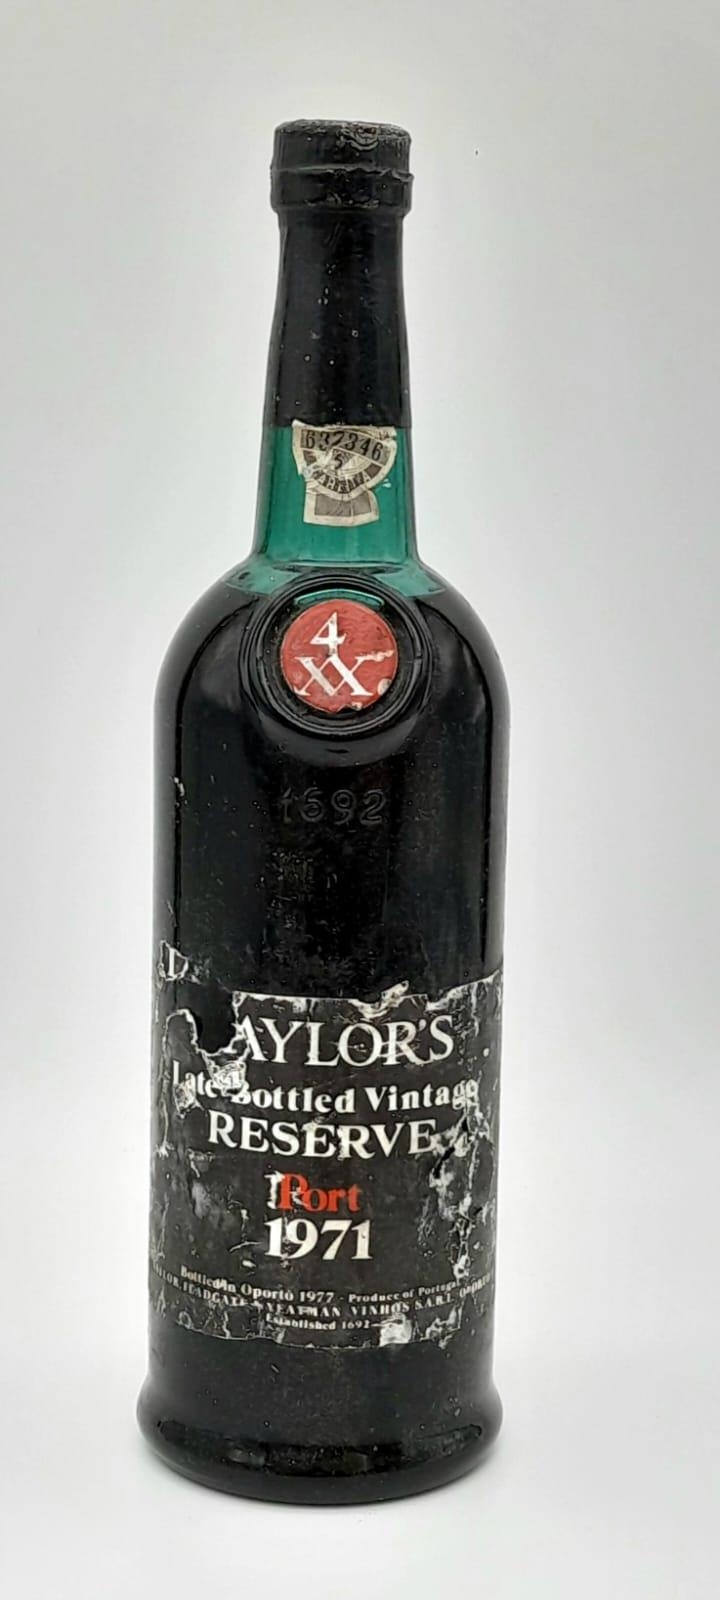 A bottle of 1971 Taylor’s Late Bottled Vintage Port